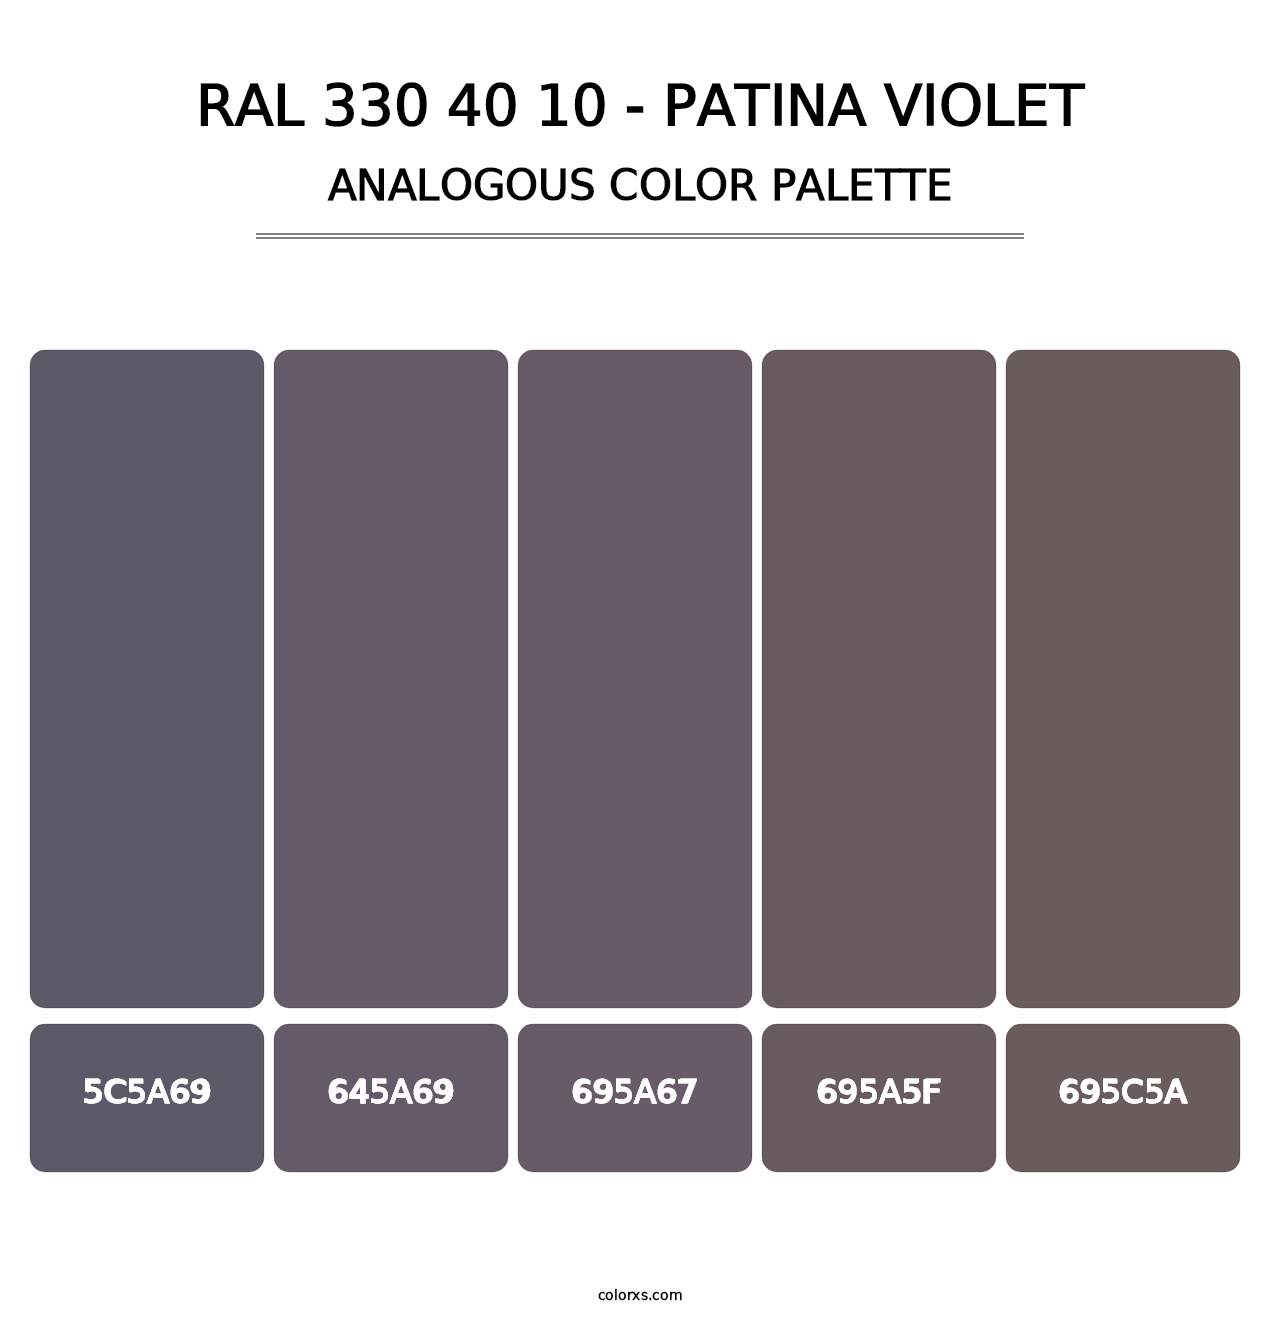 RAL 330 40 10 - Patina Violet - Analogous Color Palette